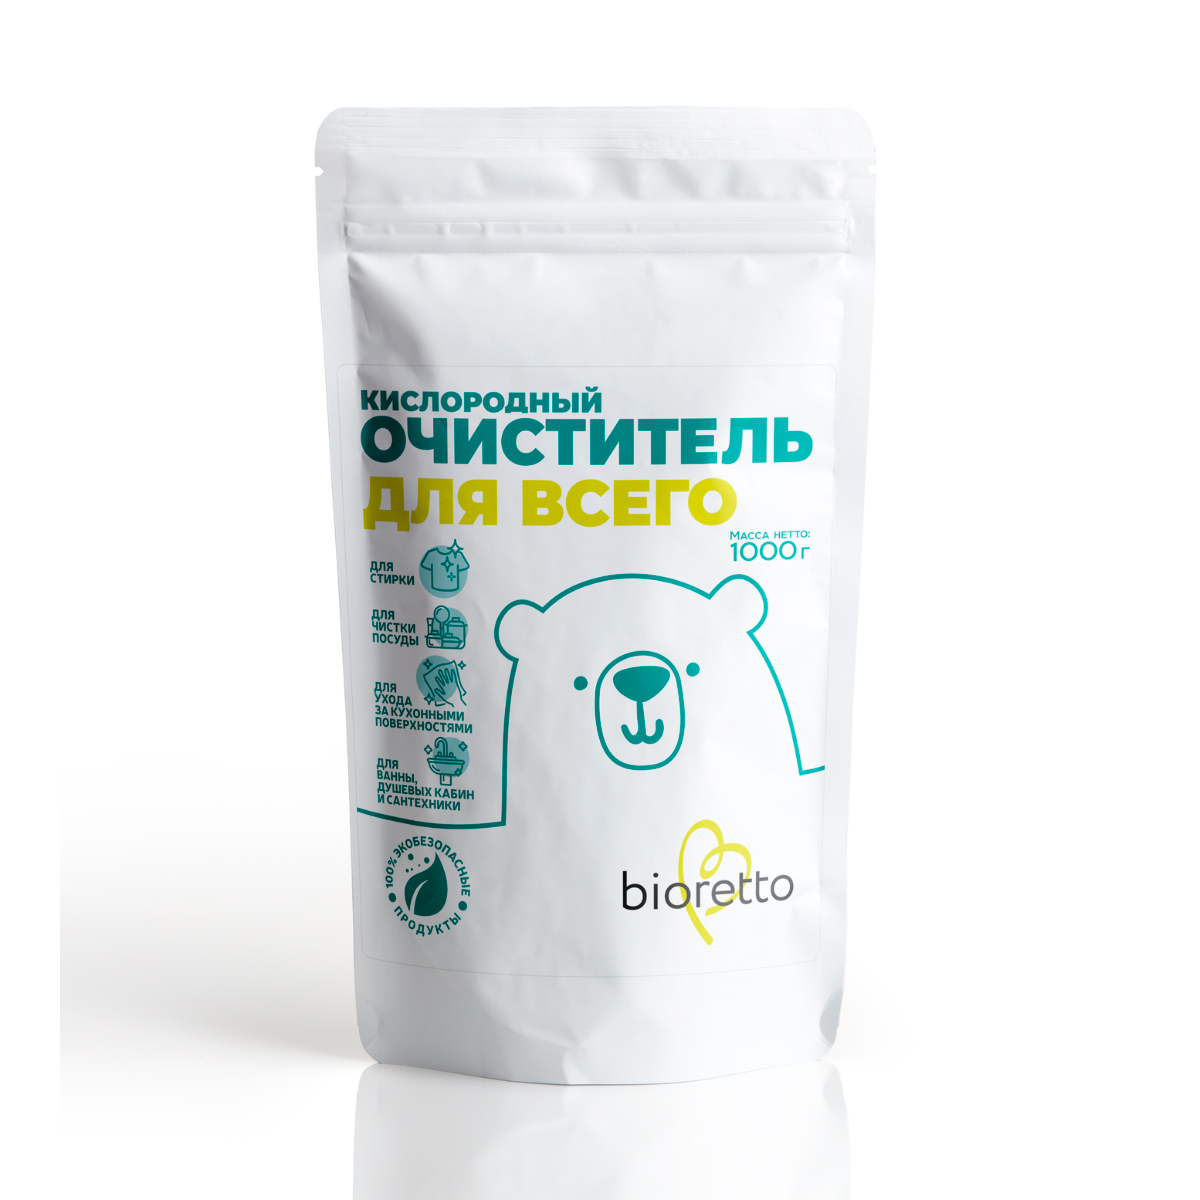 Кислородный очиститель для всего Bioretto Bio, 1кг очиститель кожи для удаления стойких загрязнений shima